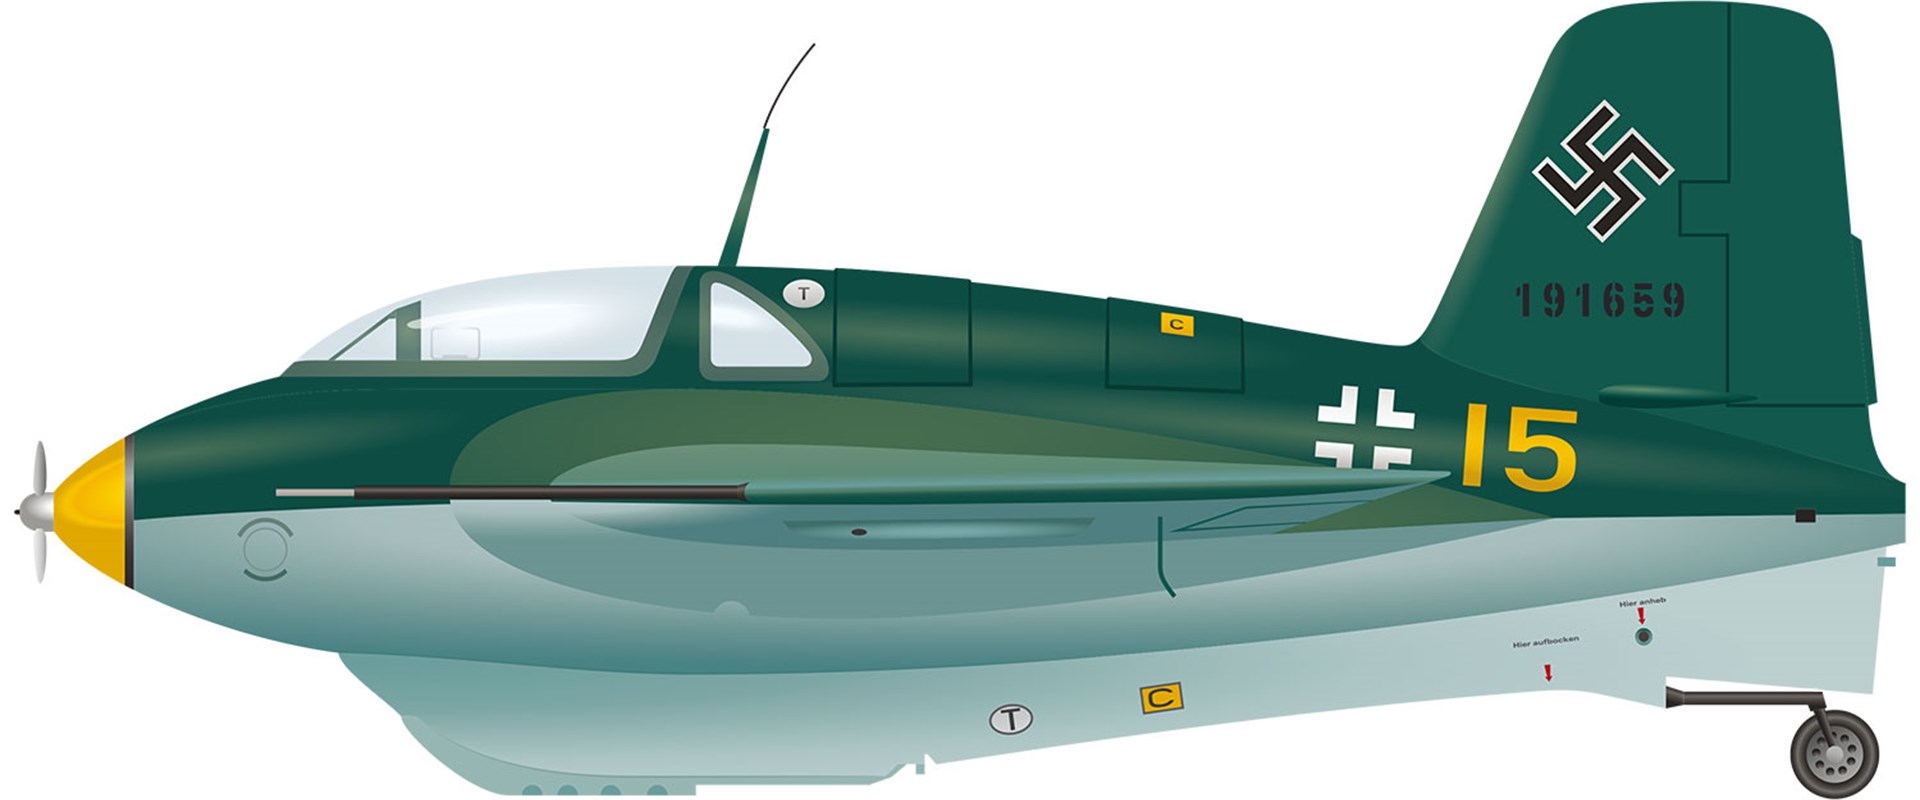 A green Messerschmitt Komet aircraft. 